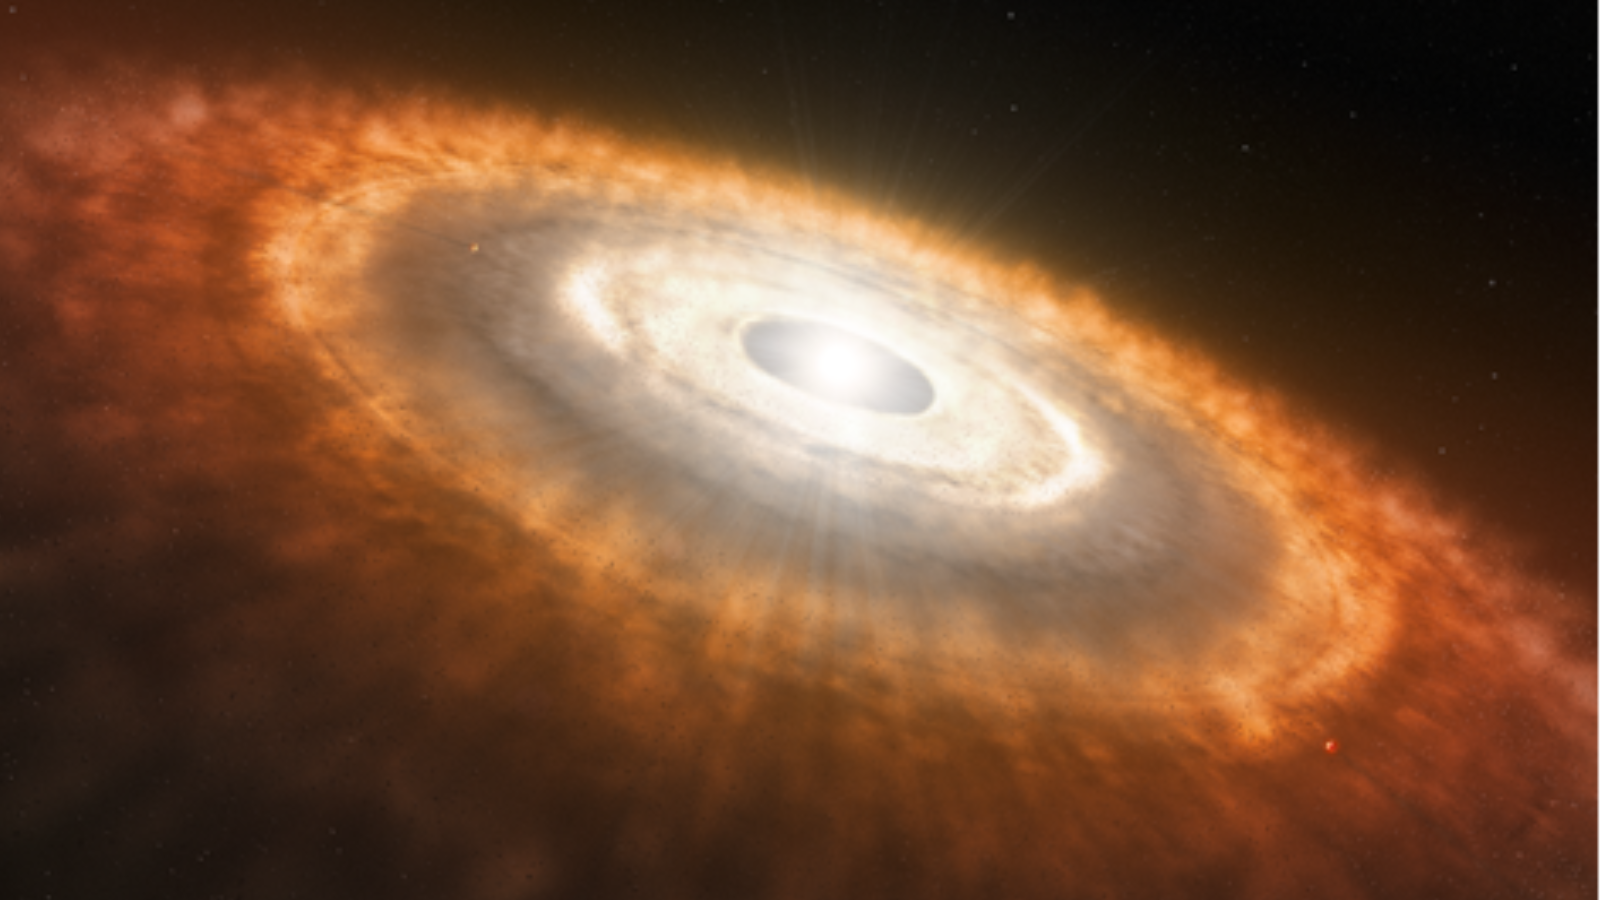 Ilustración de una estrella blanca brillante rodeada por un halo masivo de gas, polvo y otros objetos rojizos.